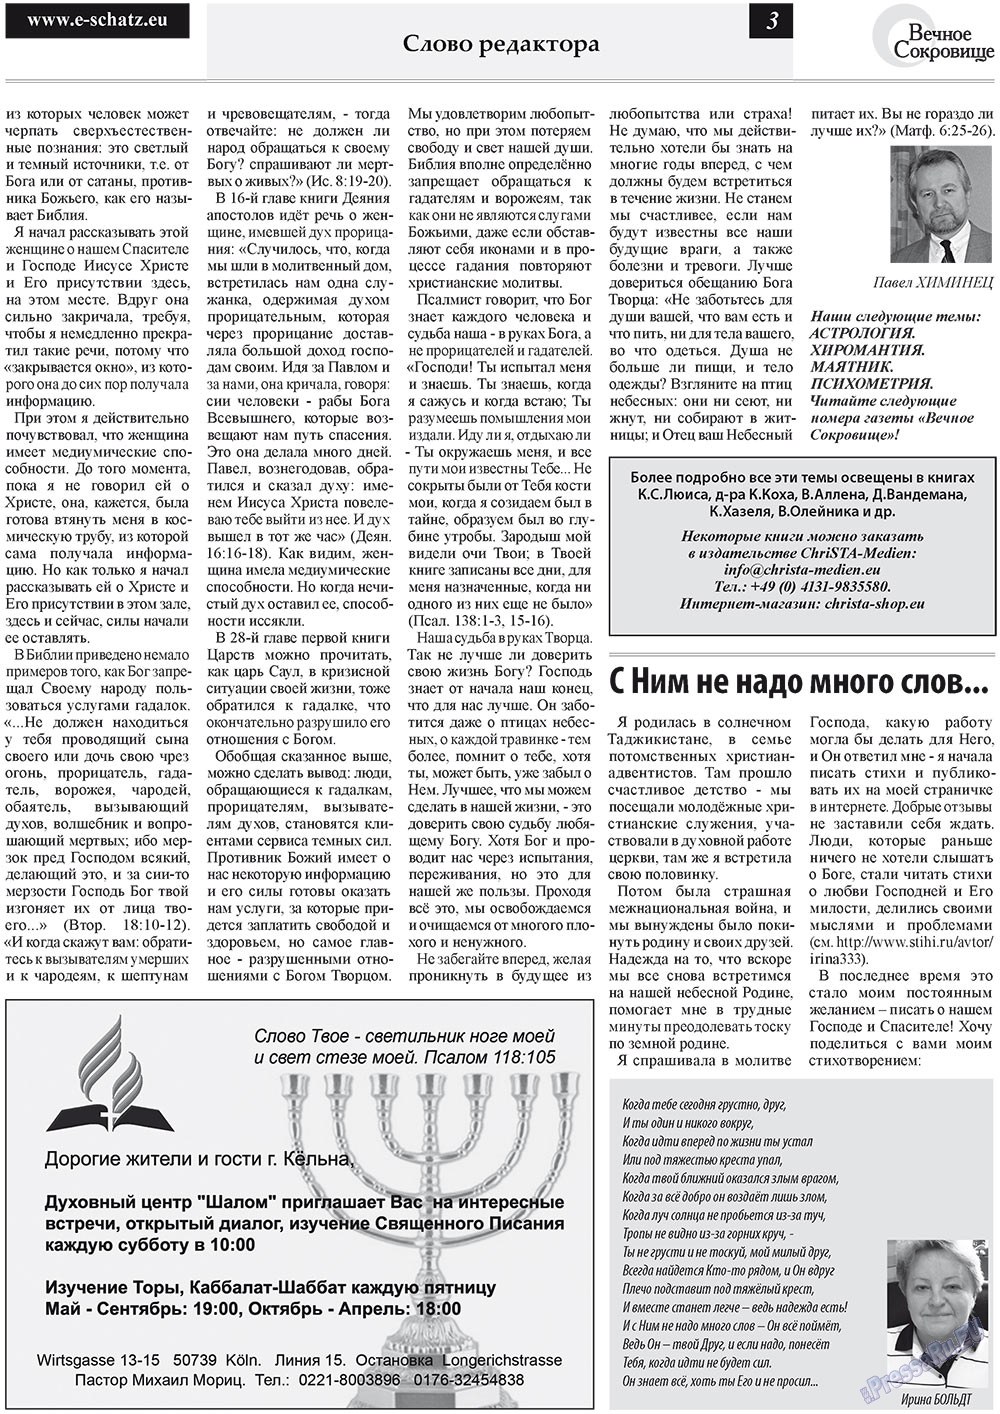 Вечное сокровище, газета. 2011 №5 стр.3